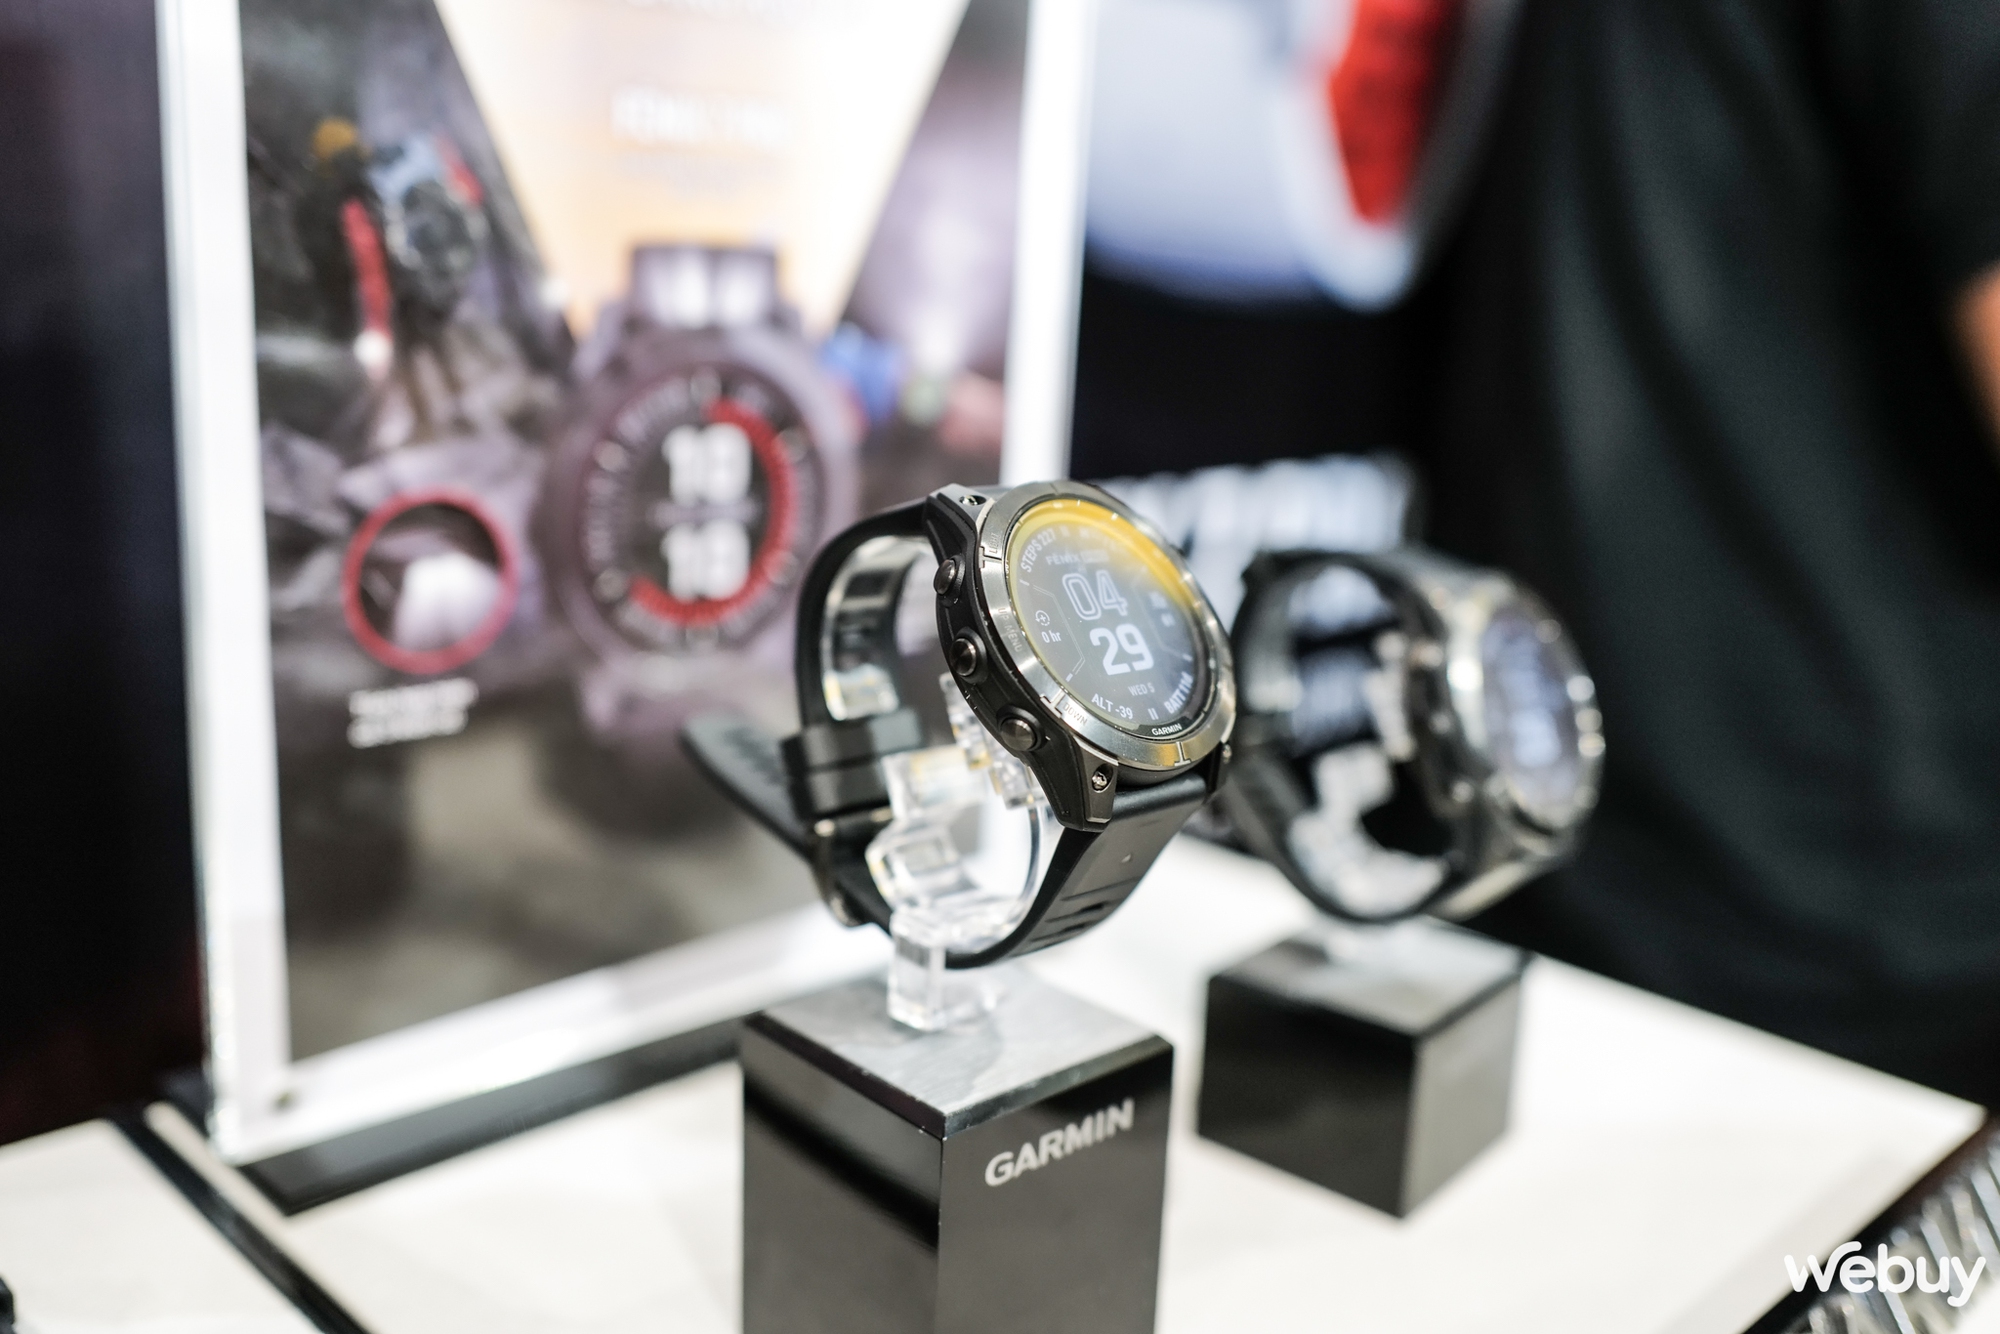 Garmin công bố bộ đôi smartwatch thể thao Fēnix 7 Pro và Epix Pro thế hệ mới - Ảnh 3.